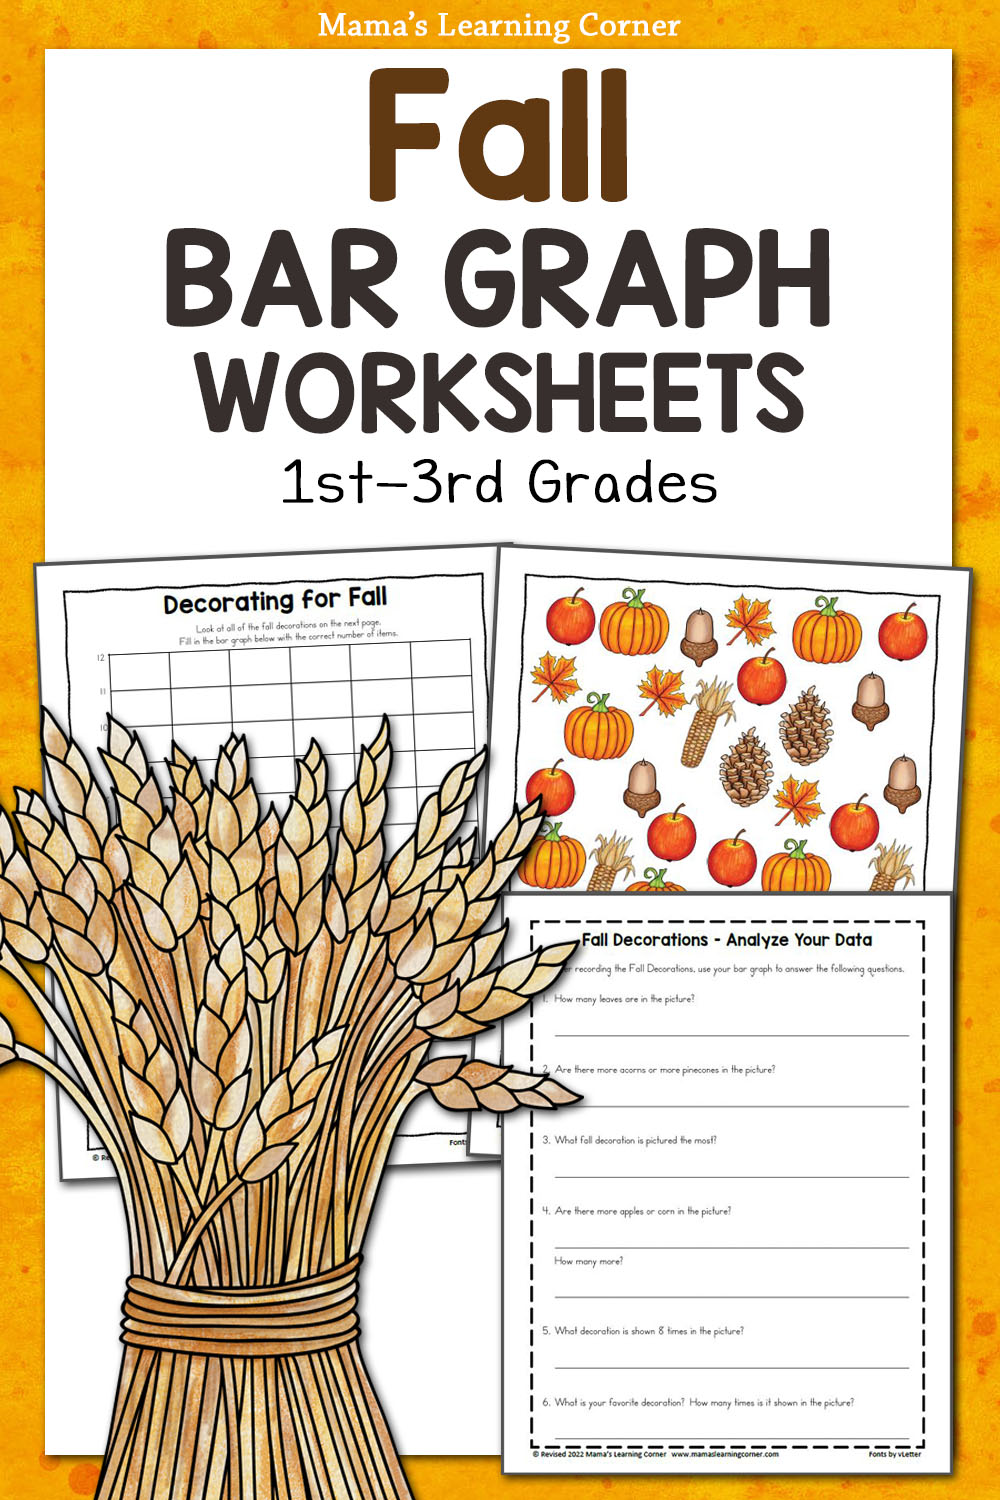 Fall Bar Graph Worksheets - Mamas Learning Corner